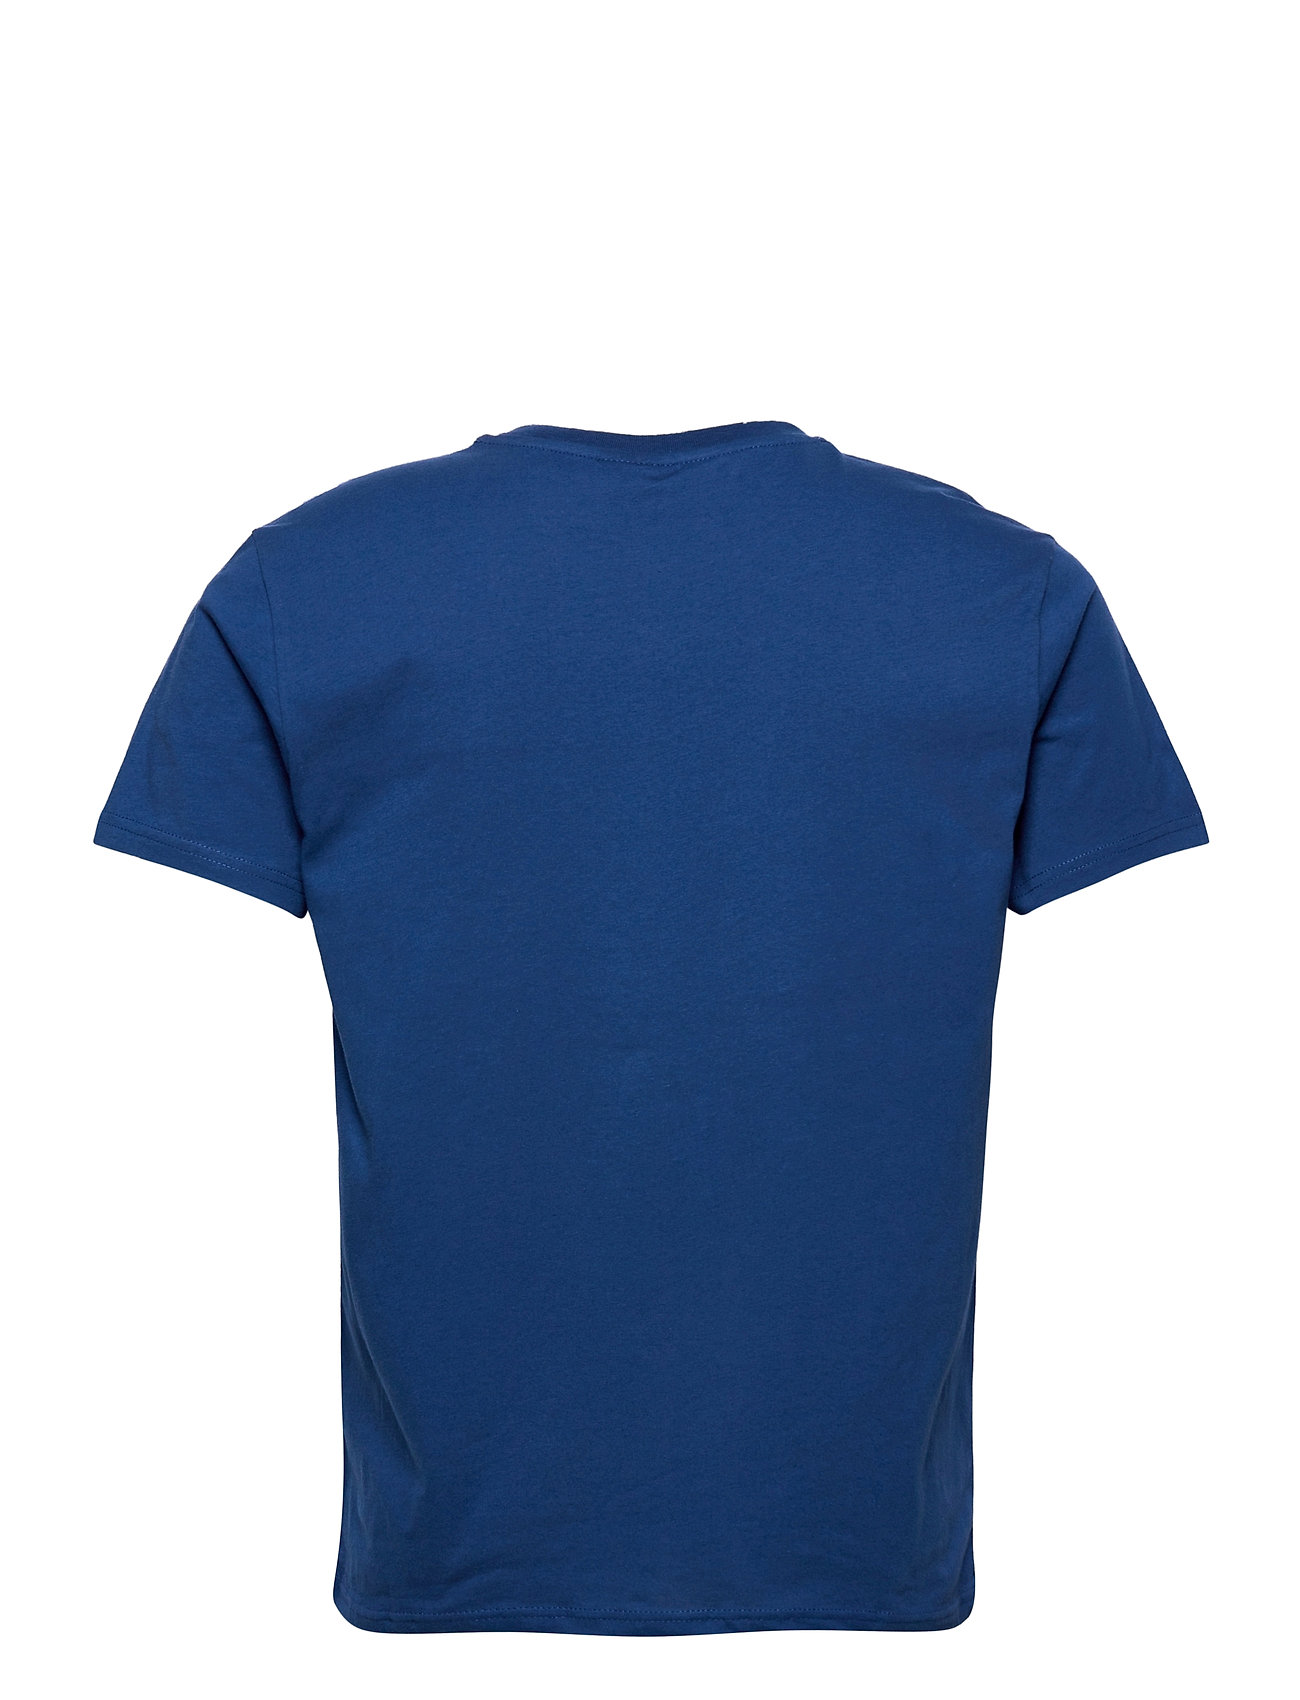 Også Sømand skrubbe Skagen Tee T-shirt Blå H2O kortærmede t-shirts fra H2O til herre i  WHITE/CONCRETE/CITRON - Pashion.dk